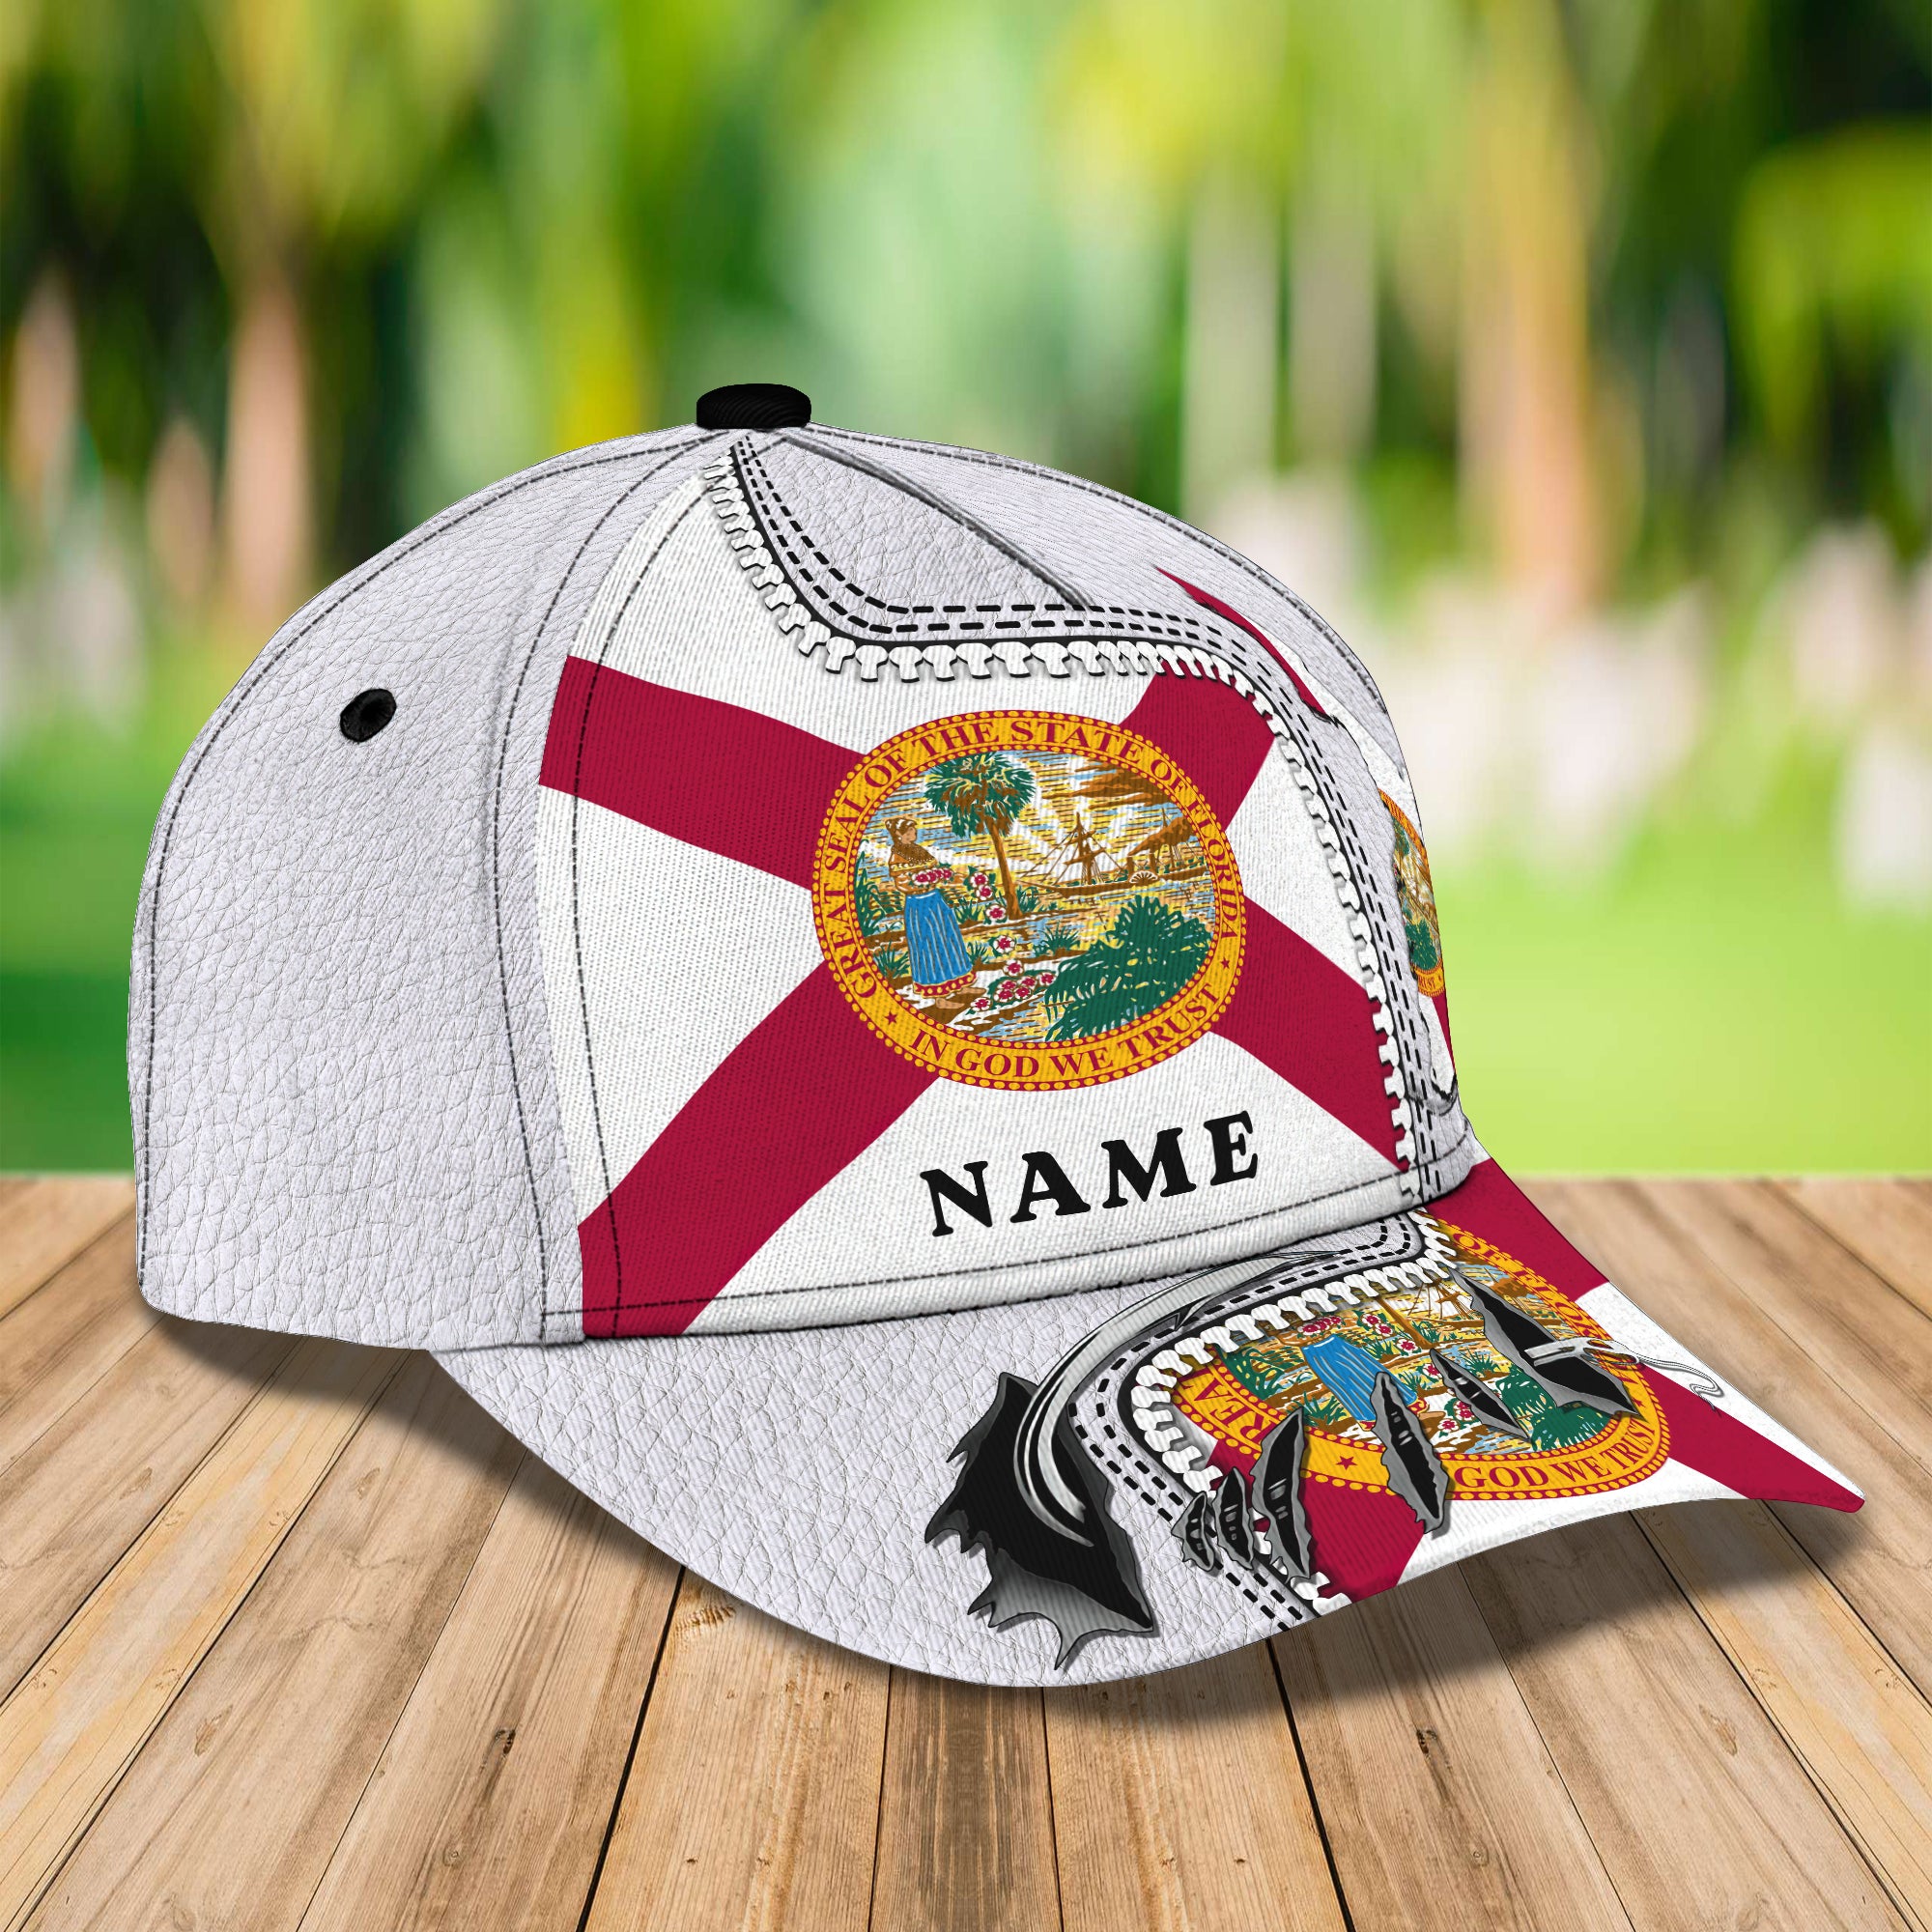 My Florida 2- Personalized Name Cap - Loop- T2k-260